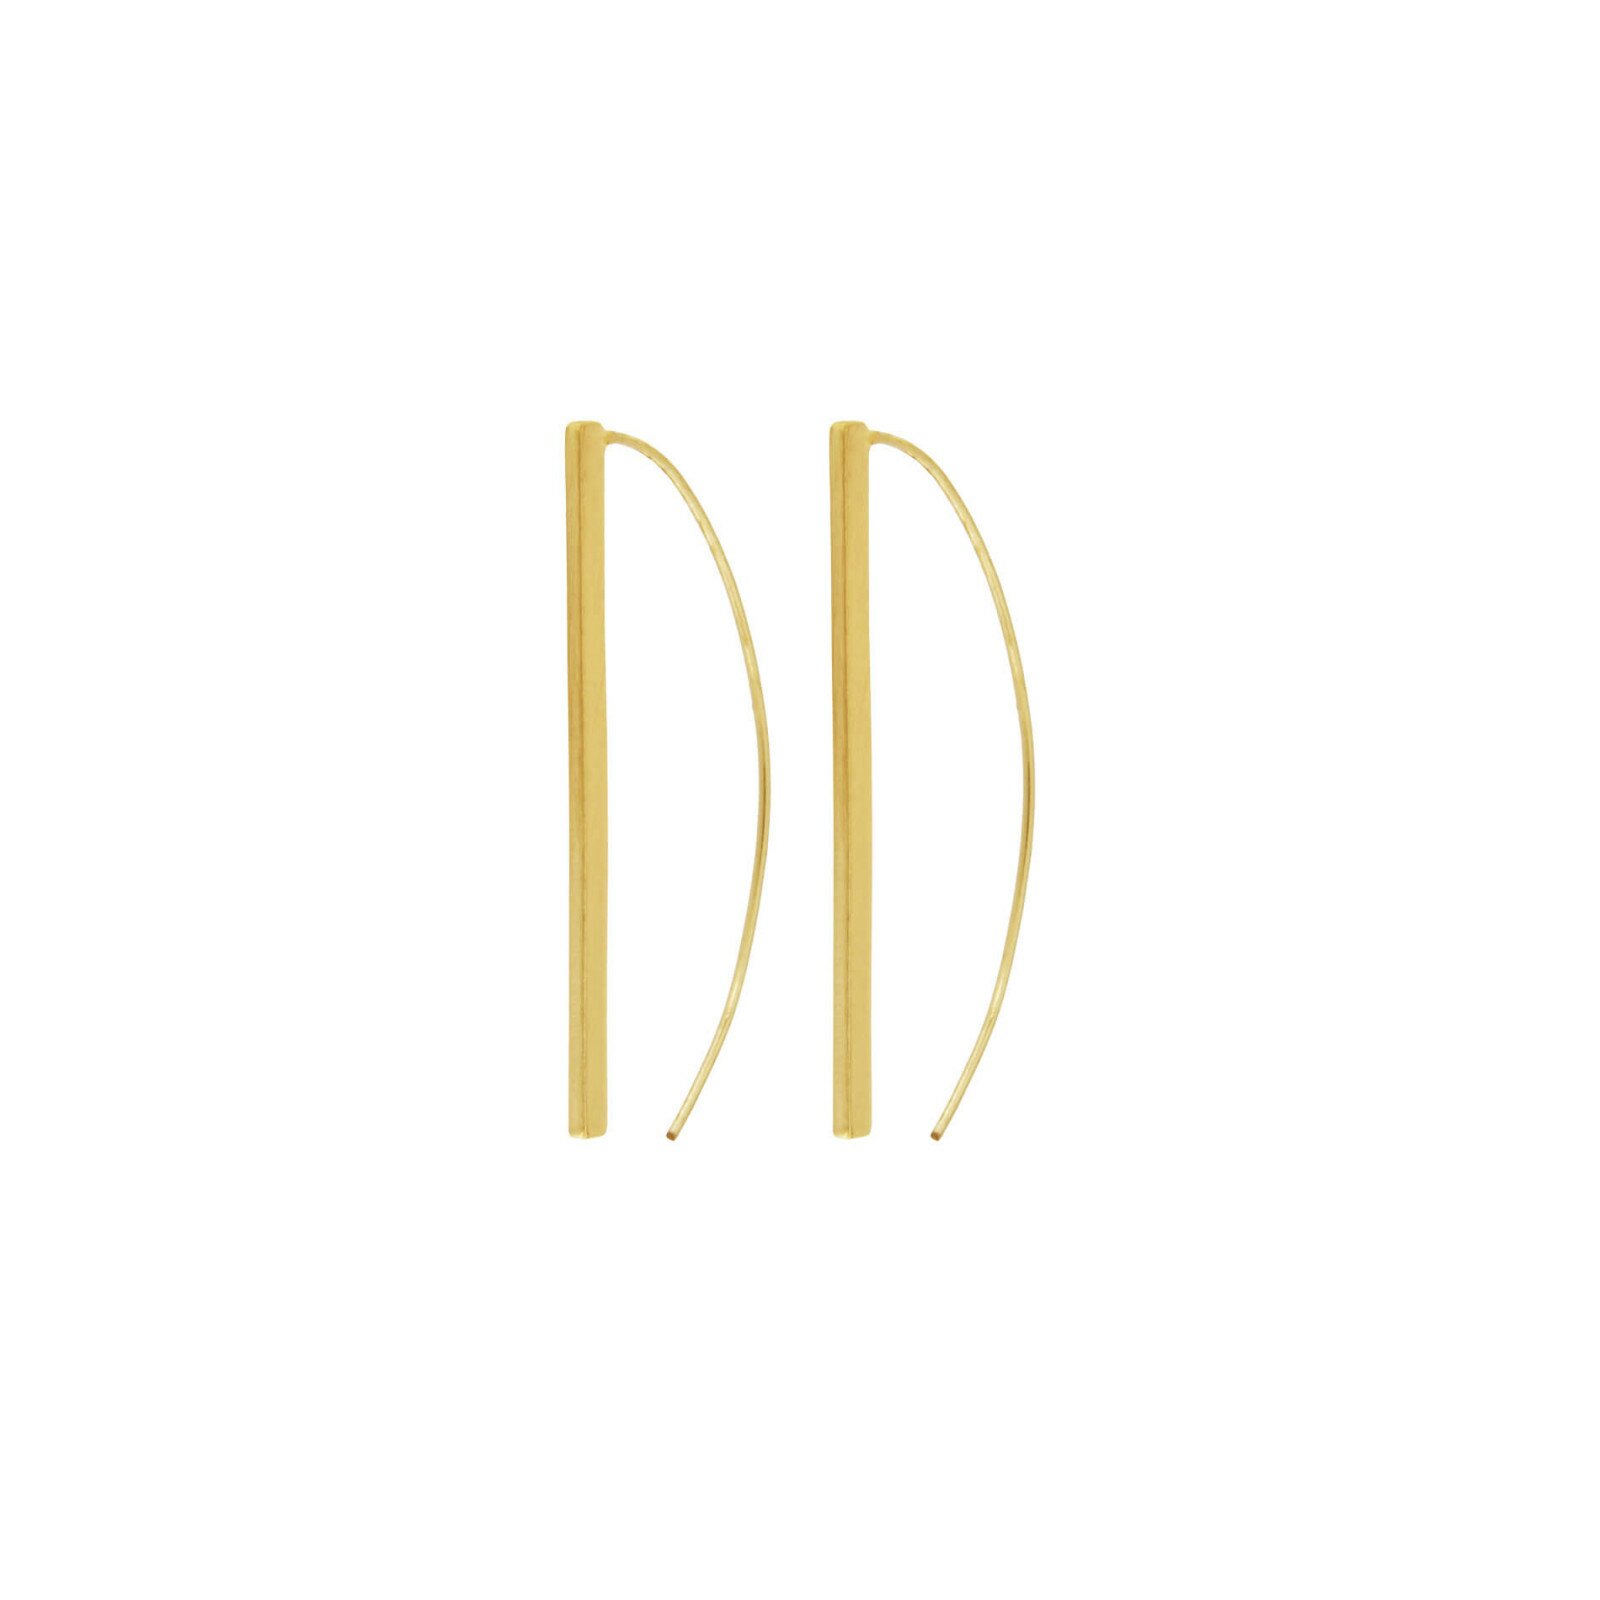 Dansk Smykkekunst Theia Line Hanger Earrings - Gold Plating 